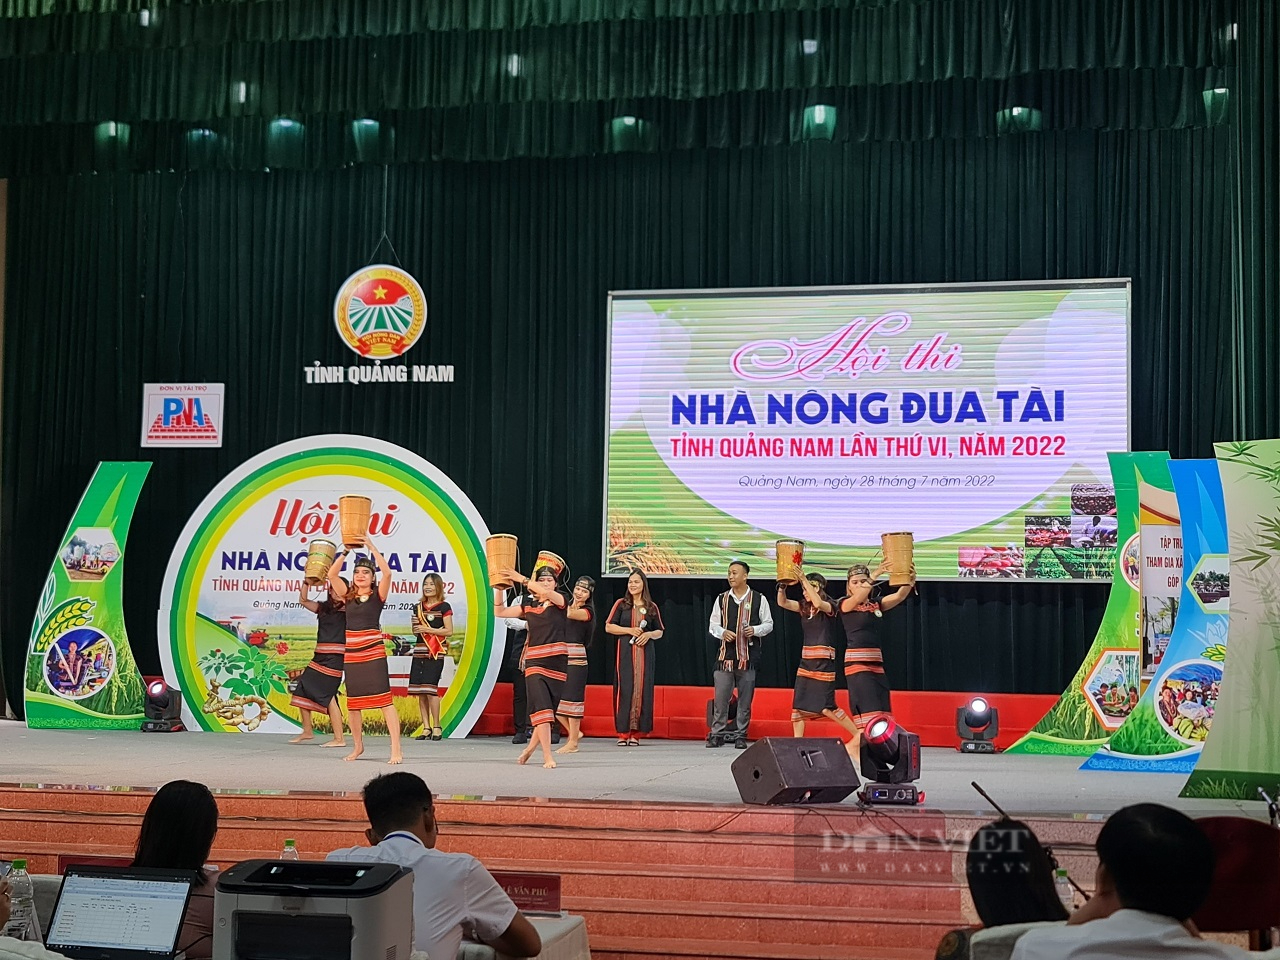 180 thí sinh nhà nông ở Quảng Nam tranh tài tại Hội thi nhà nông đua tài - Ảnh 6.